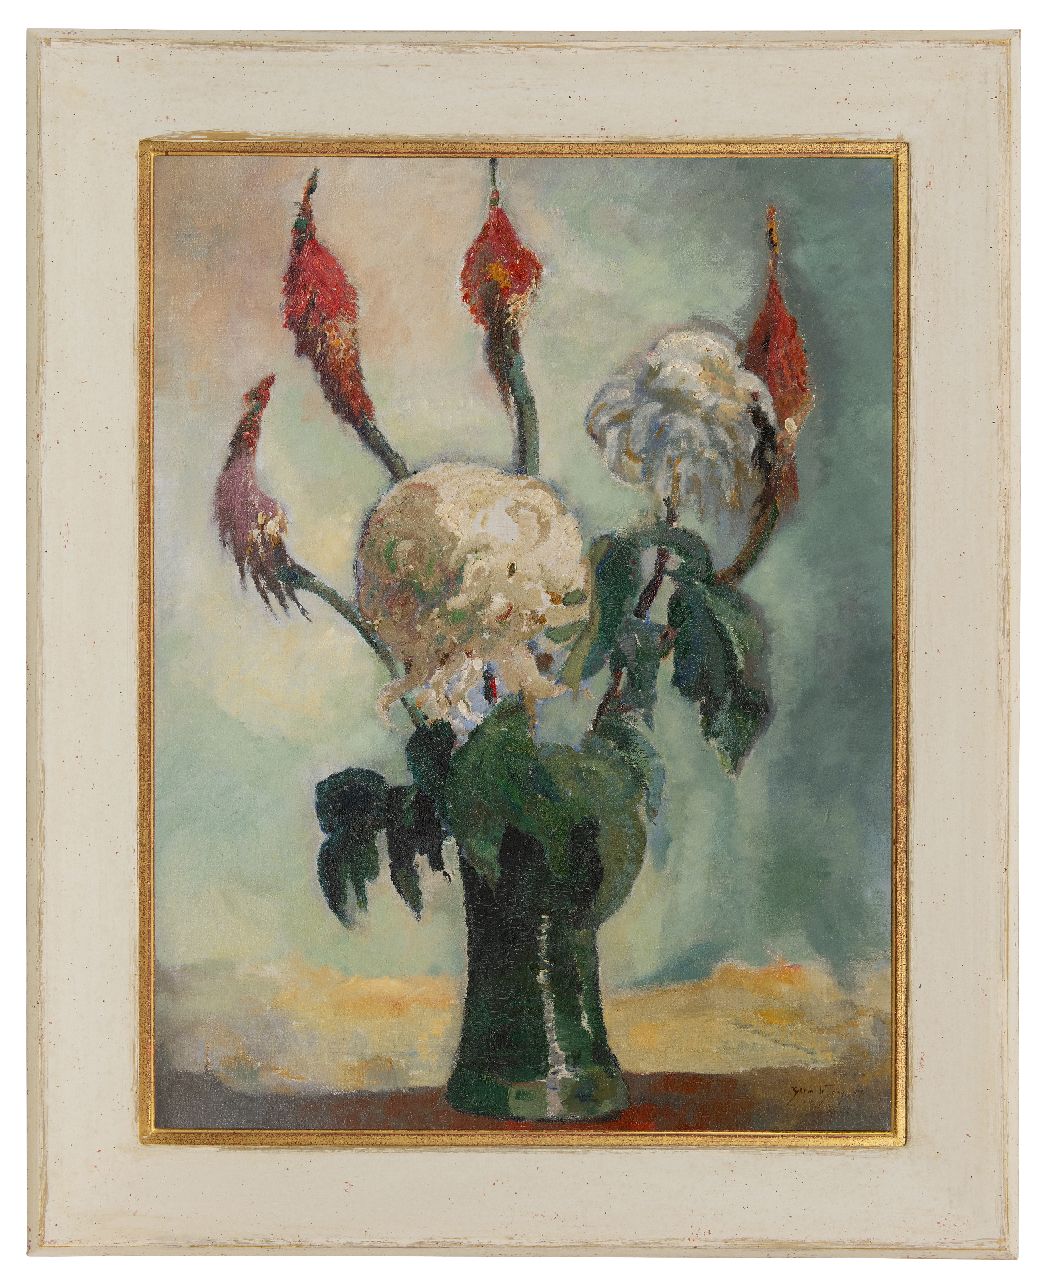 Jong G. de | Gerben 'Germ' de Jong | Schilderijen te koop aangeboden | Chrysanten, olieverf op doek 80,4 x 60,4 cm, gesigneerd rechtsonder en gedateerd 1917